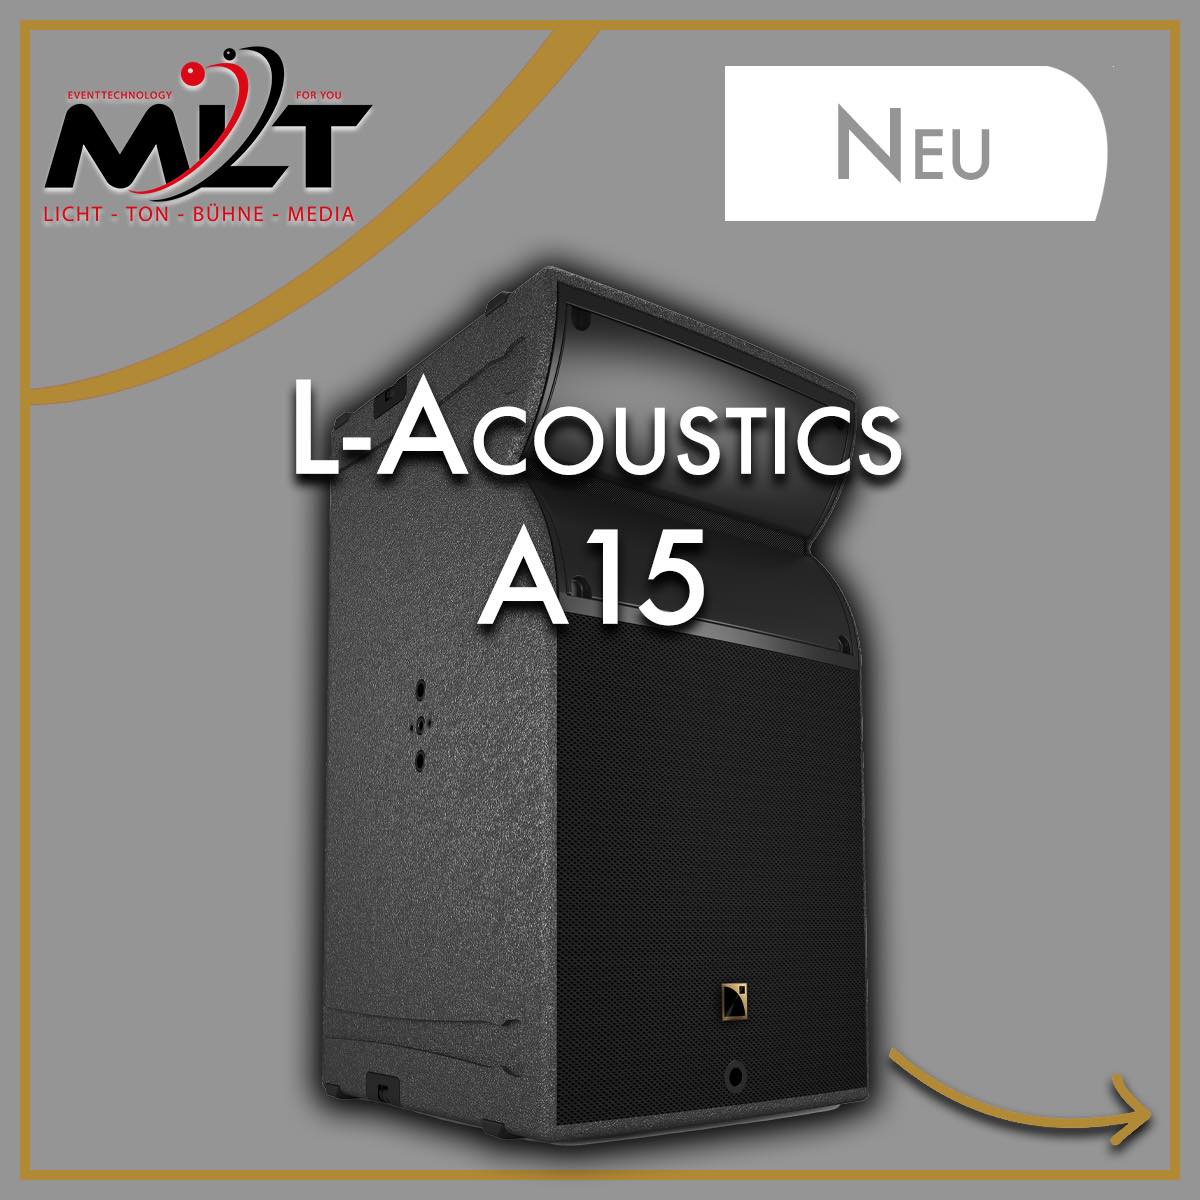 L-Acoustics A15 Focus und Wide PA-Lautsprecher Neu in der Vermietung.